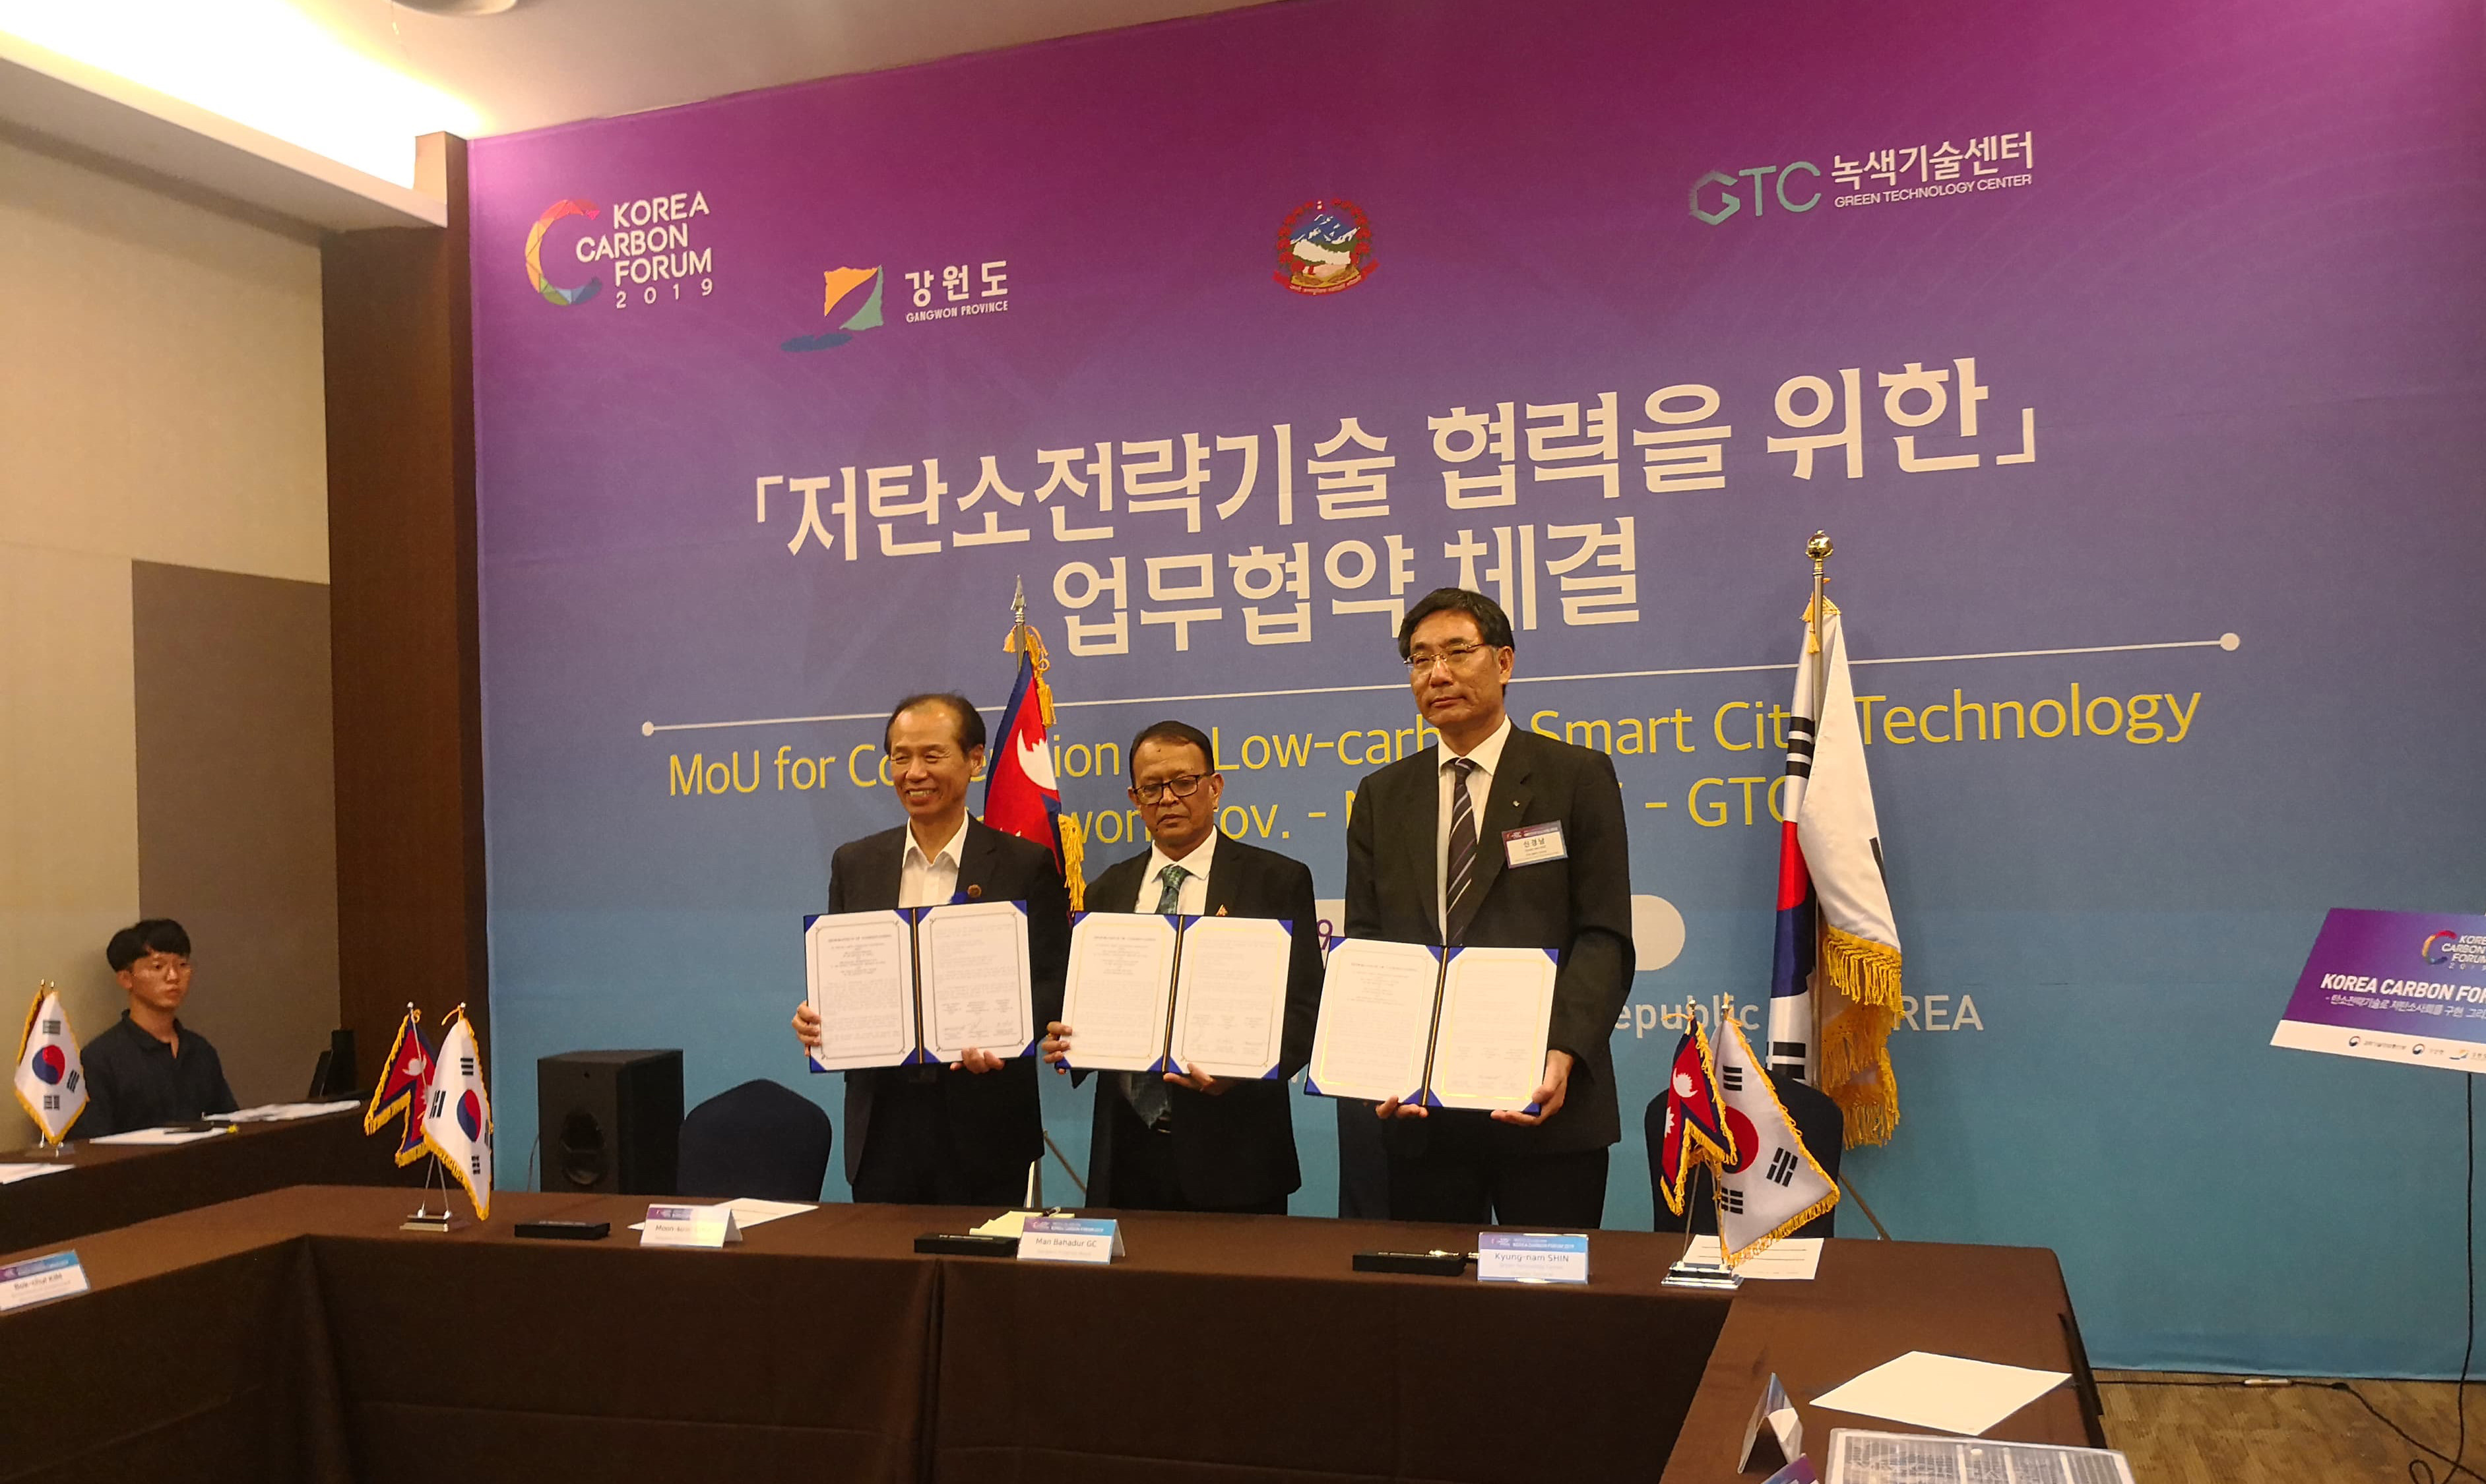 पोखरा महानगर र कोरियाको ग्यांवोन प्रान्तबीच साझेदारी सम्झौता